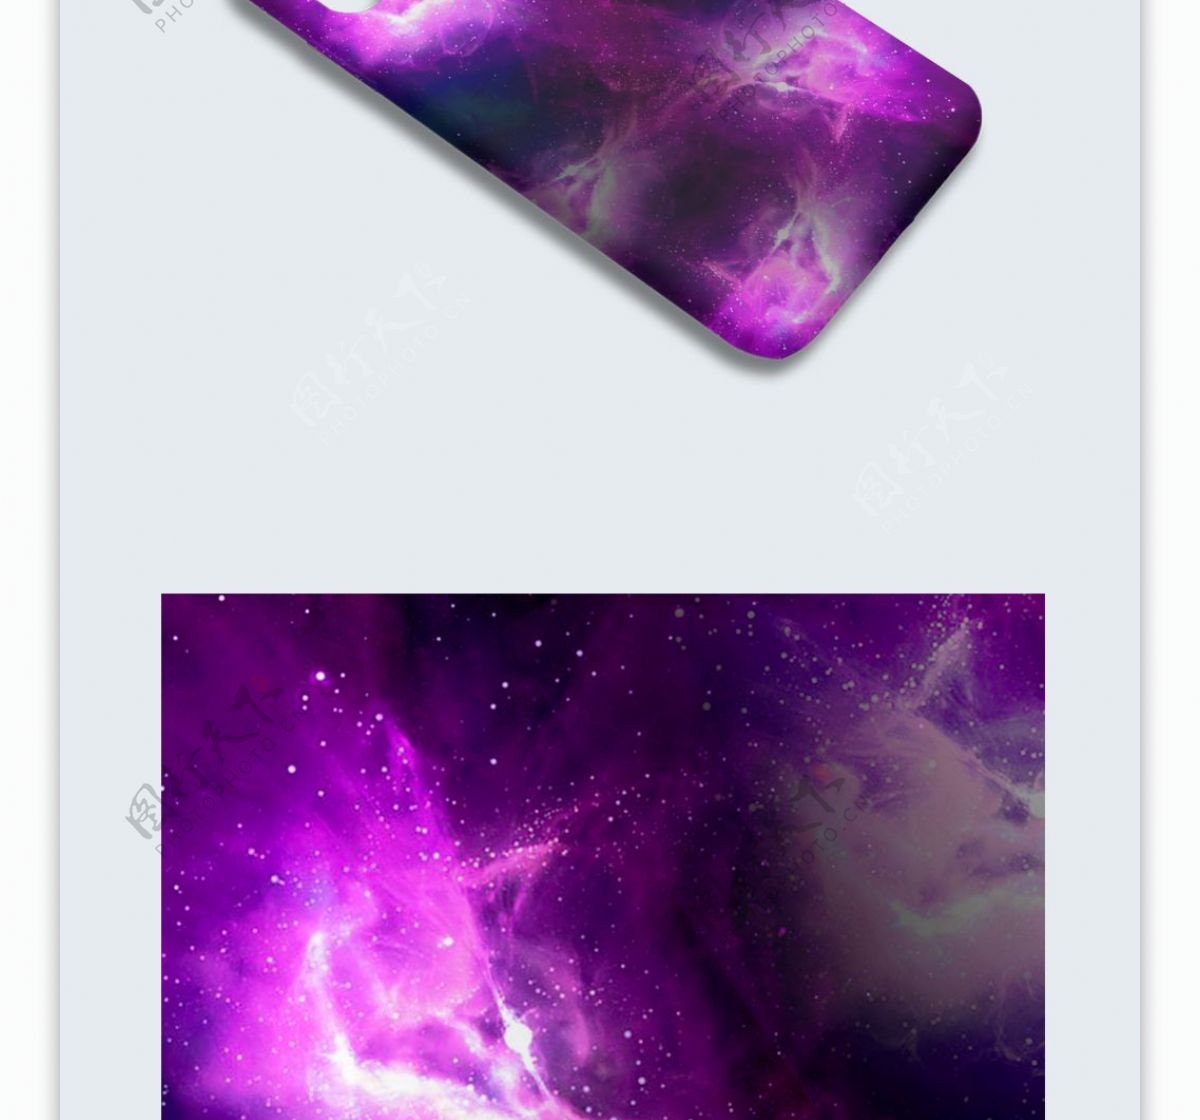 原创紫色唯美能量星空镜面炫彩手机壳